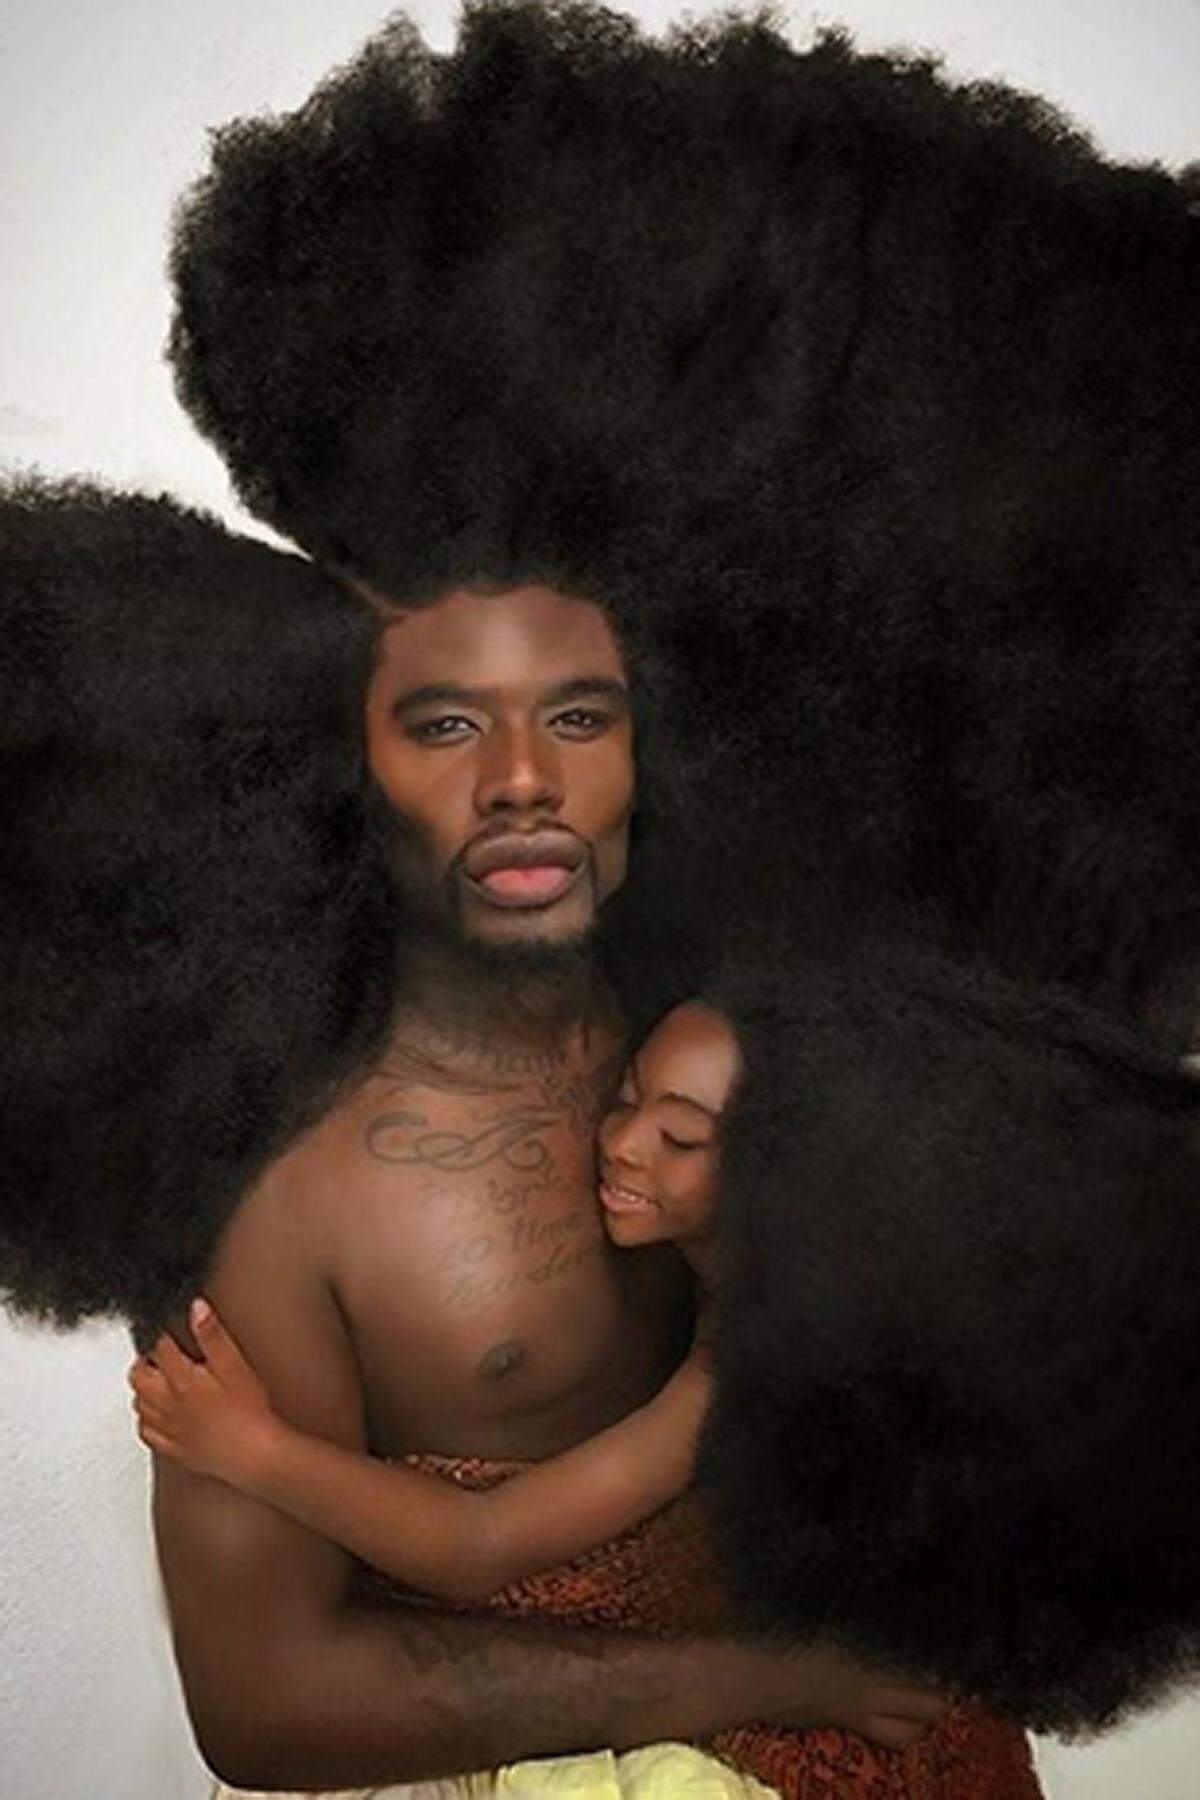 Benny Harlem aus Los Angeles stehen die Haare zu Berge - und zwar etwa 52 Zentimeter hoch. Der 27-Jährige, der sich als Model ein Zubrot zu seinem Lehrergehalt verdient, nennt seinen Kopfschmuck stolz "Krone" und hat es damit sogar ins Guinness Buch der Rekorde geschafft. Knapp 445.000 Instagram-Fans hat Harlem.